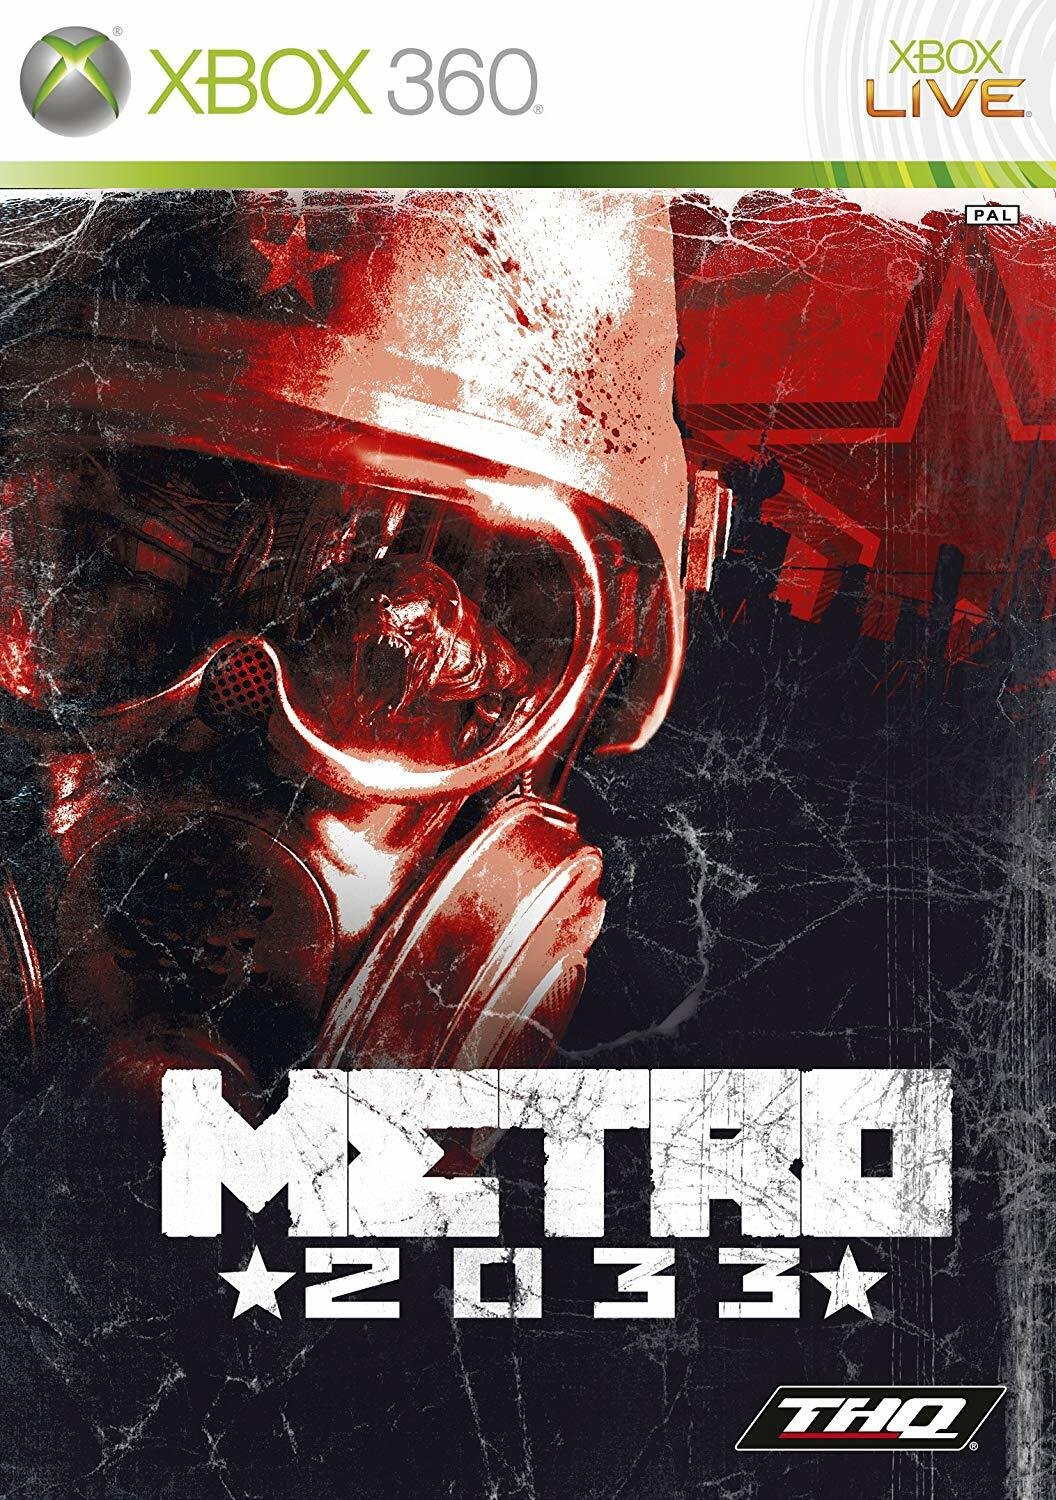 Cover sleeve della confezione del videogioco Metro 2033 per Xbox